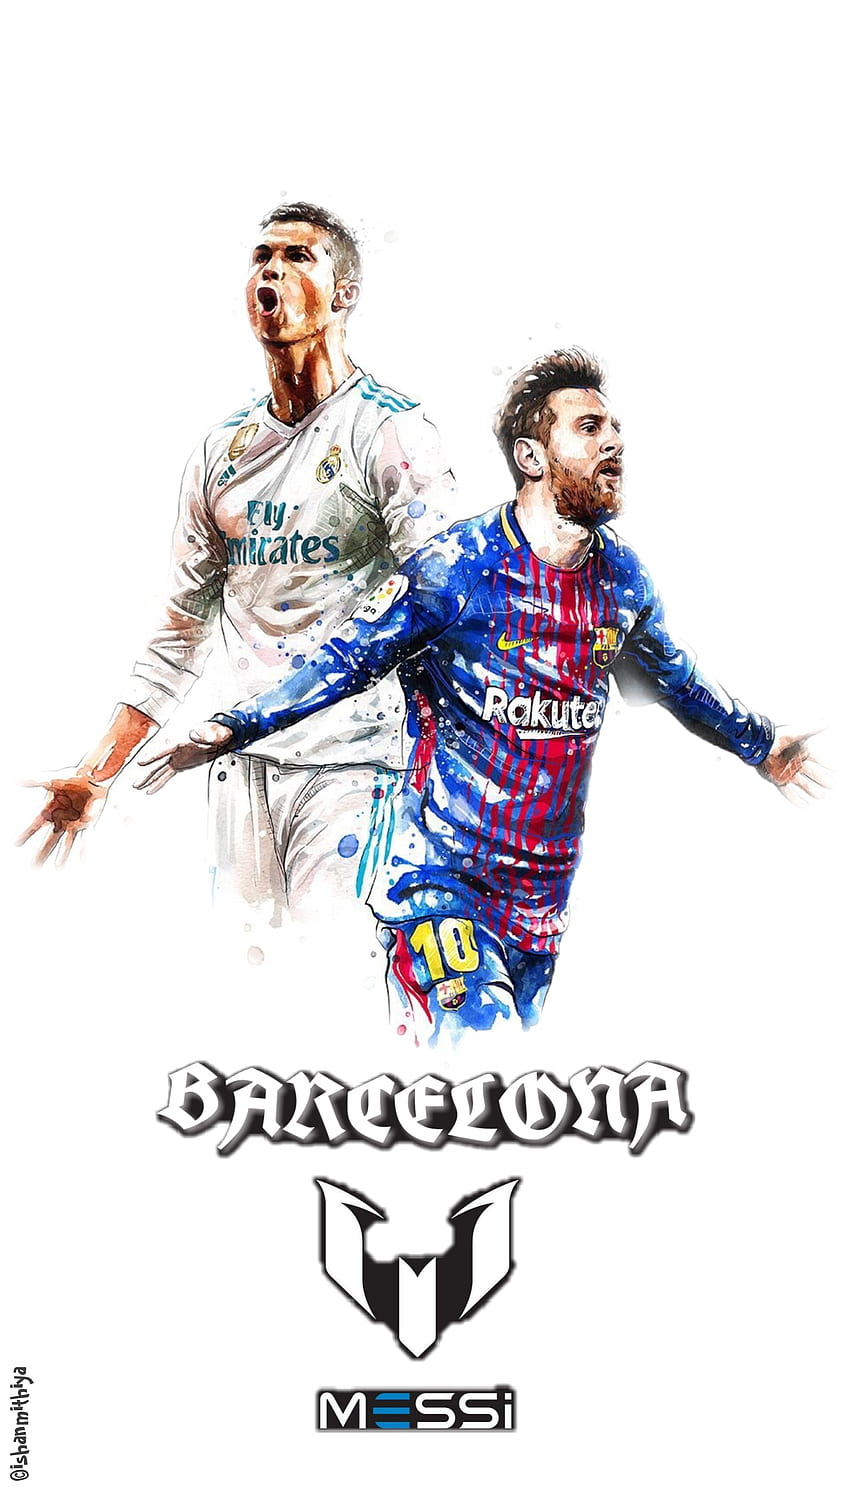 222 Hình Nền Messi Barcelona Ngầu Mạnh Mẽ OÁCH XÀ LÀ BÁCH